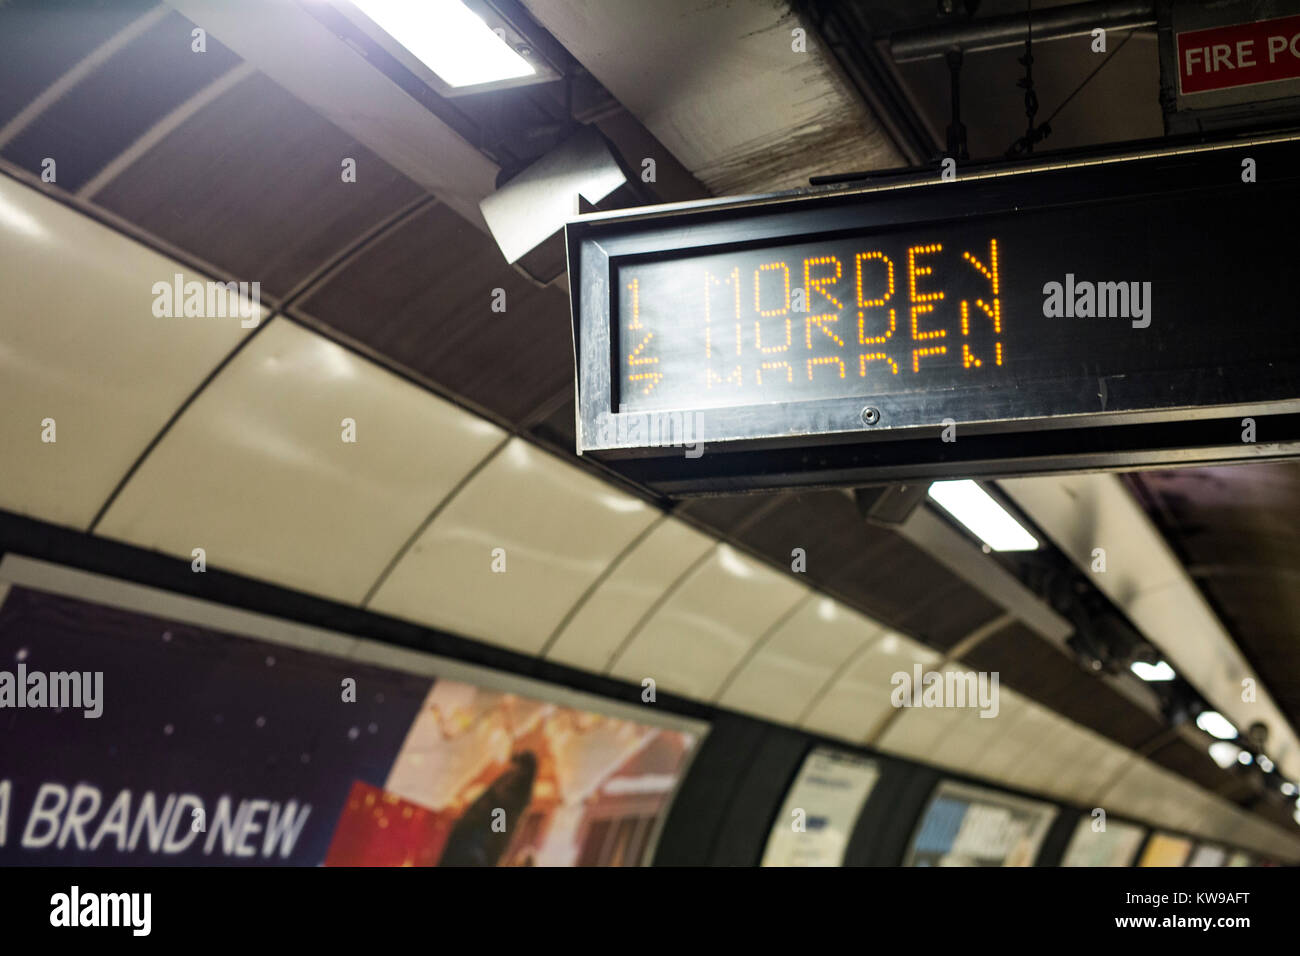 Le schede di informazioni a southbound Northern line piattaforma alla stazione di London Bridge visualizzazione 'Morden' come destinazioni finali. Foto Stock